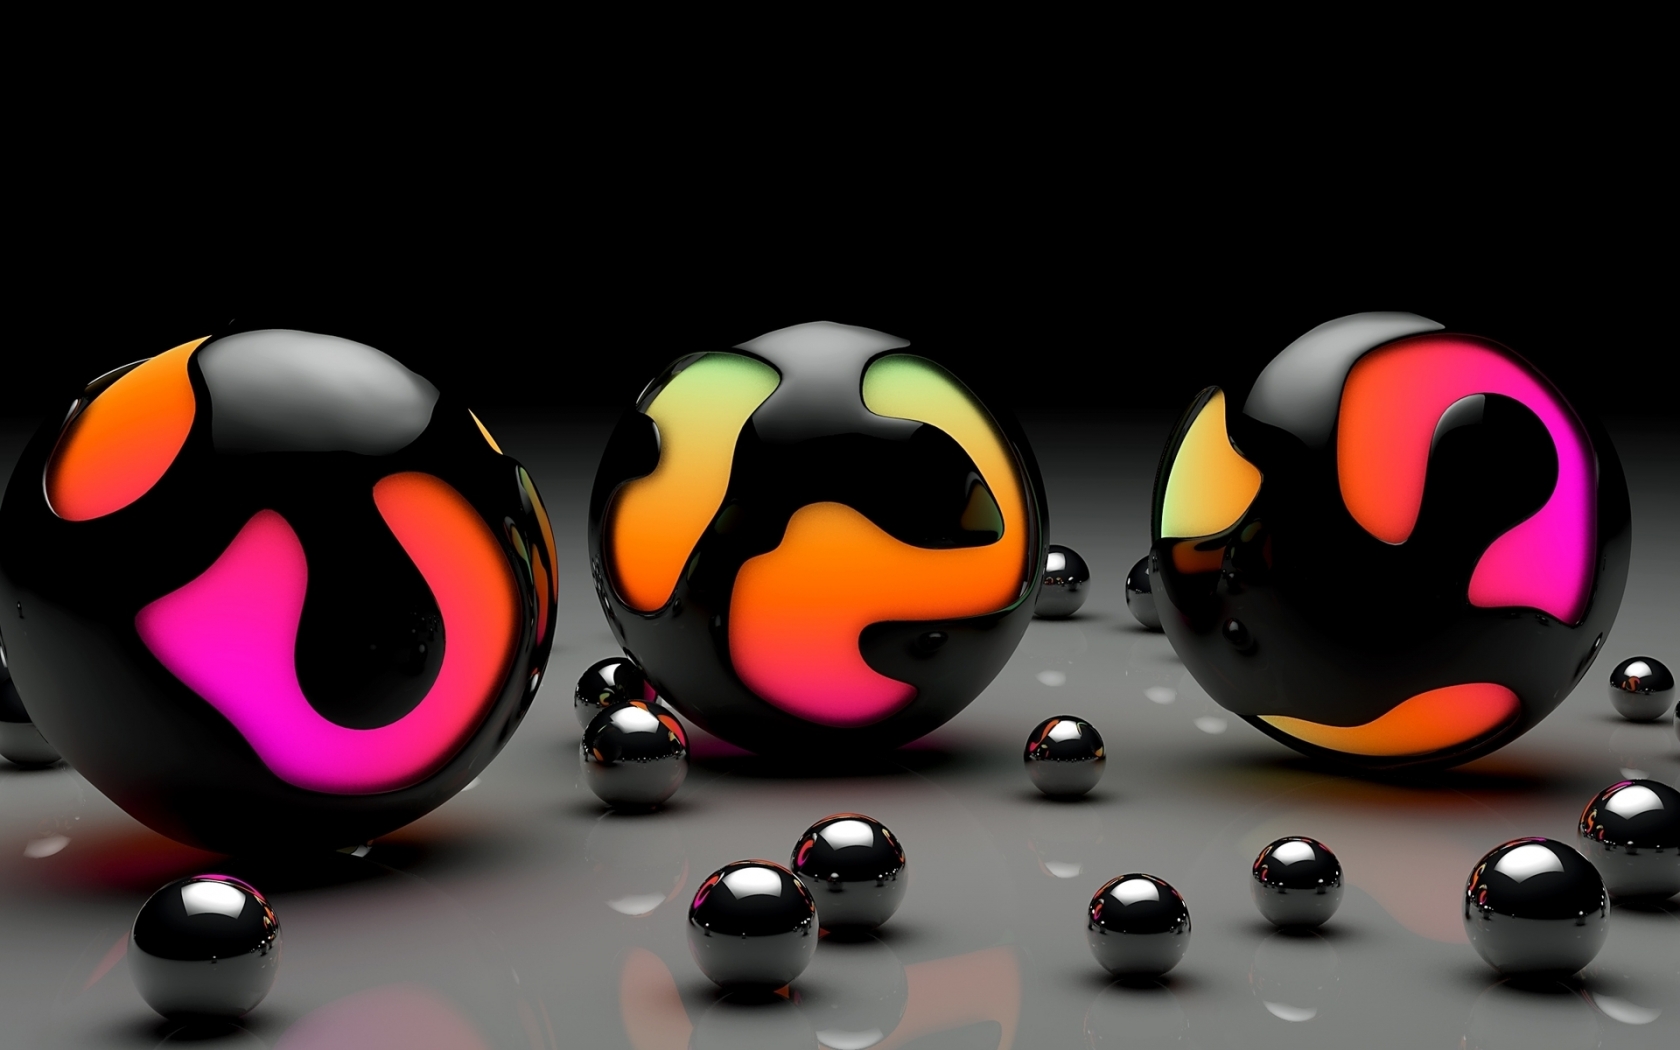 Balls Design for 1680 x 1050 widescreen resolution